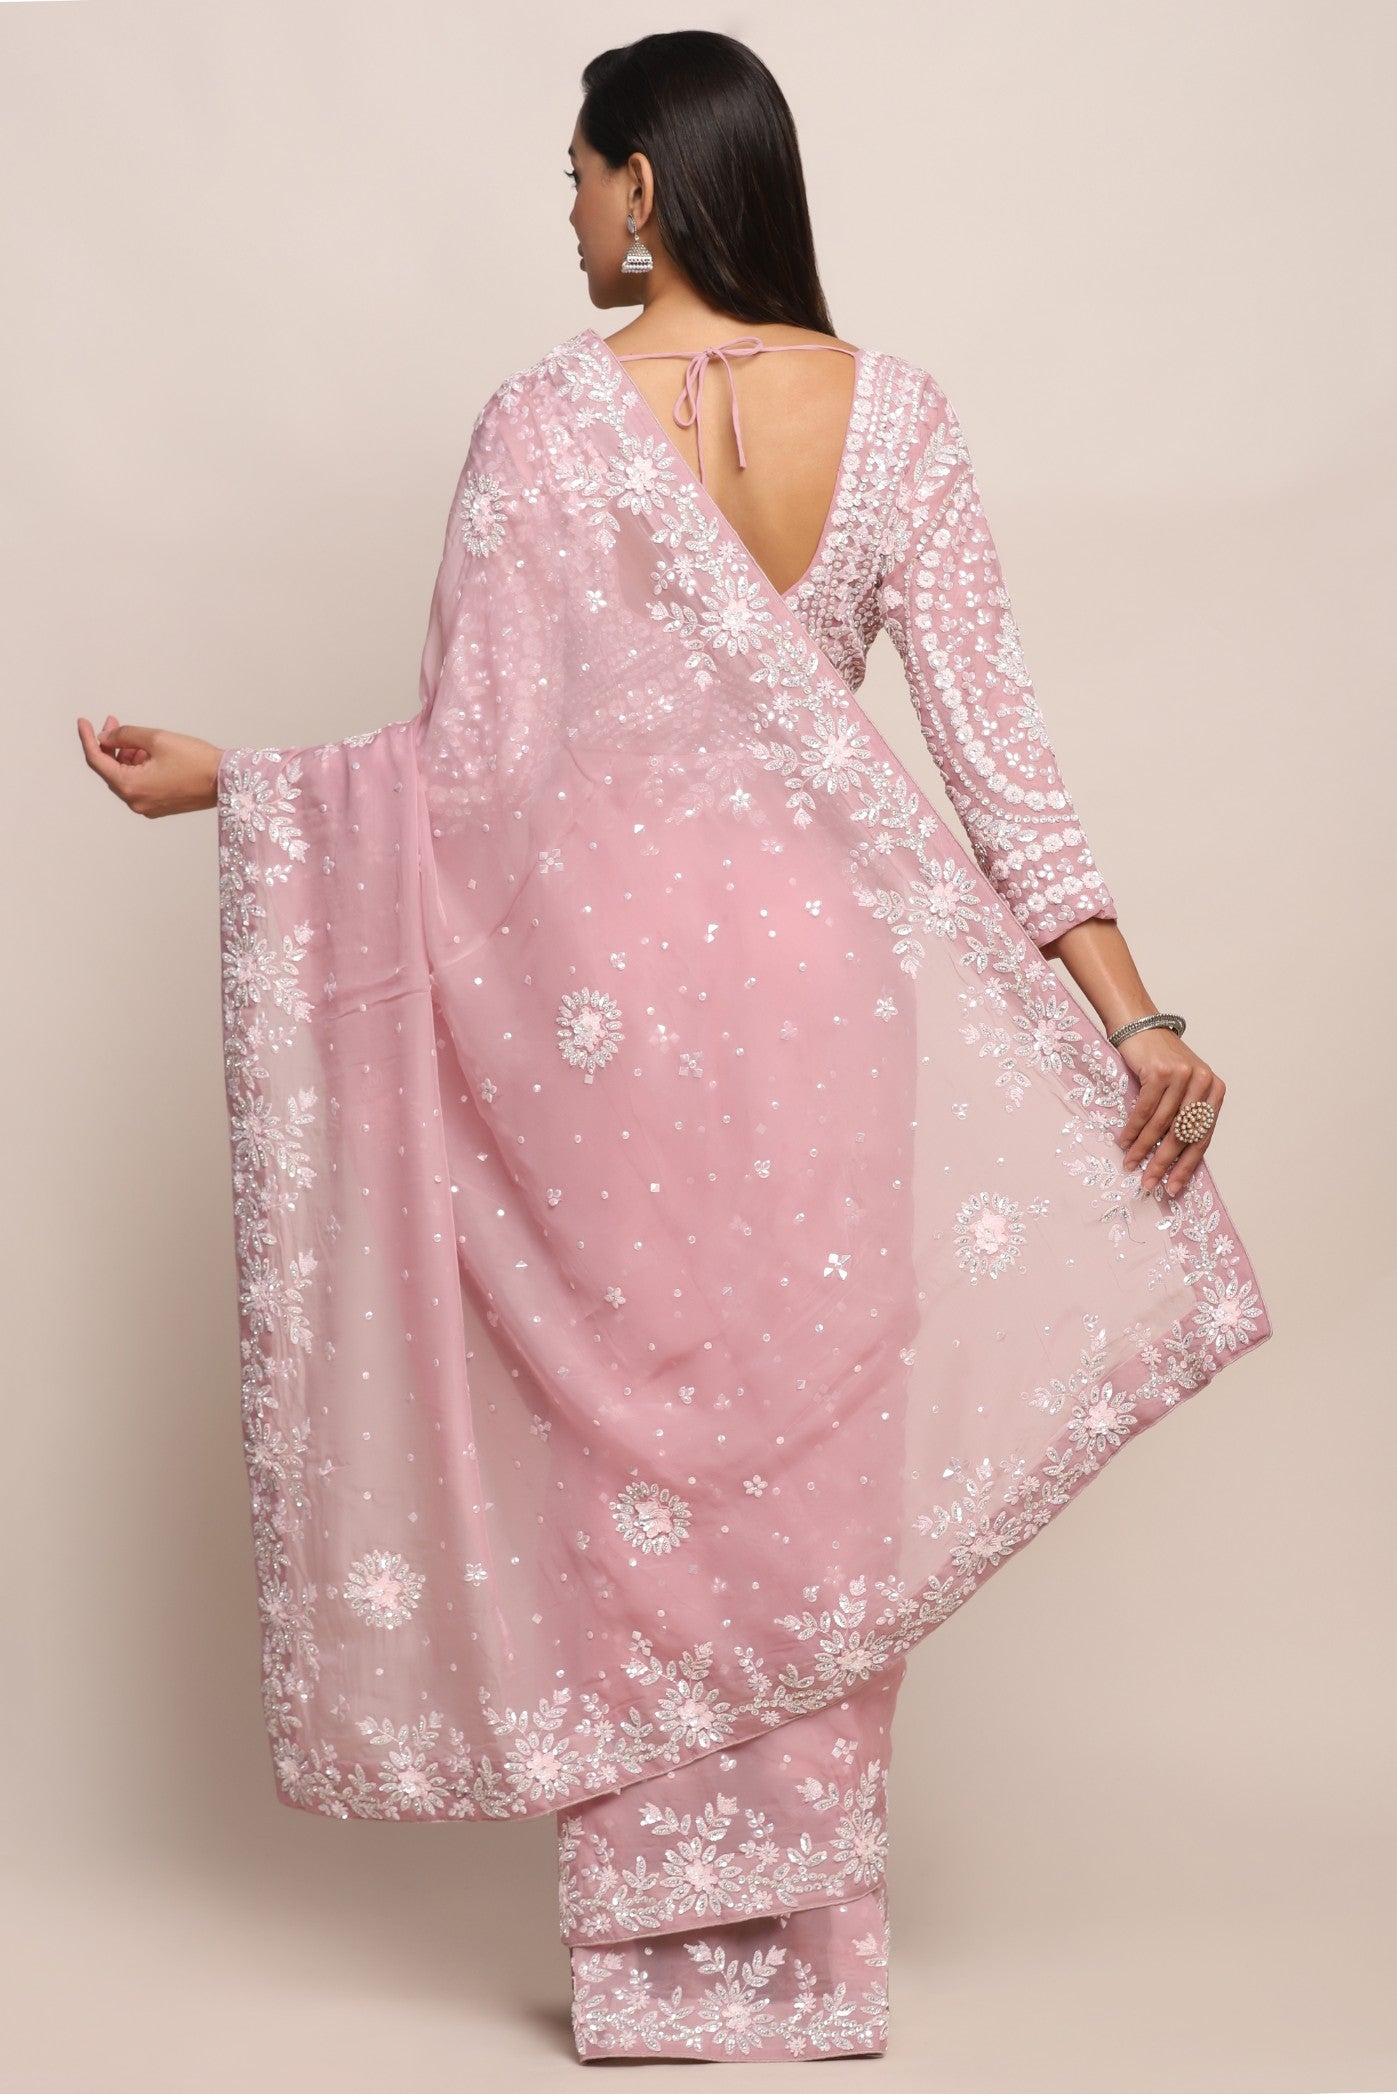 Elegant pink color floral motif embroidered saree